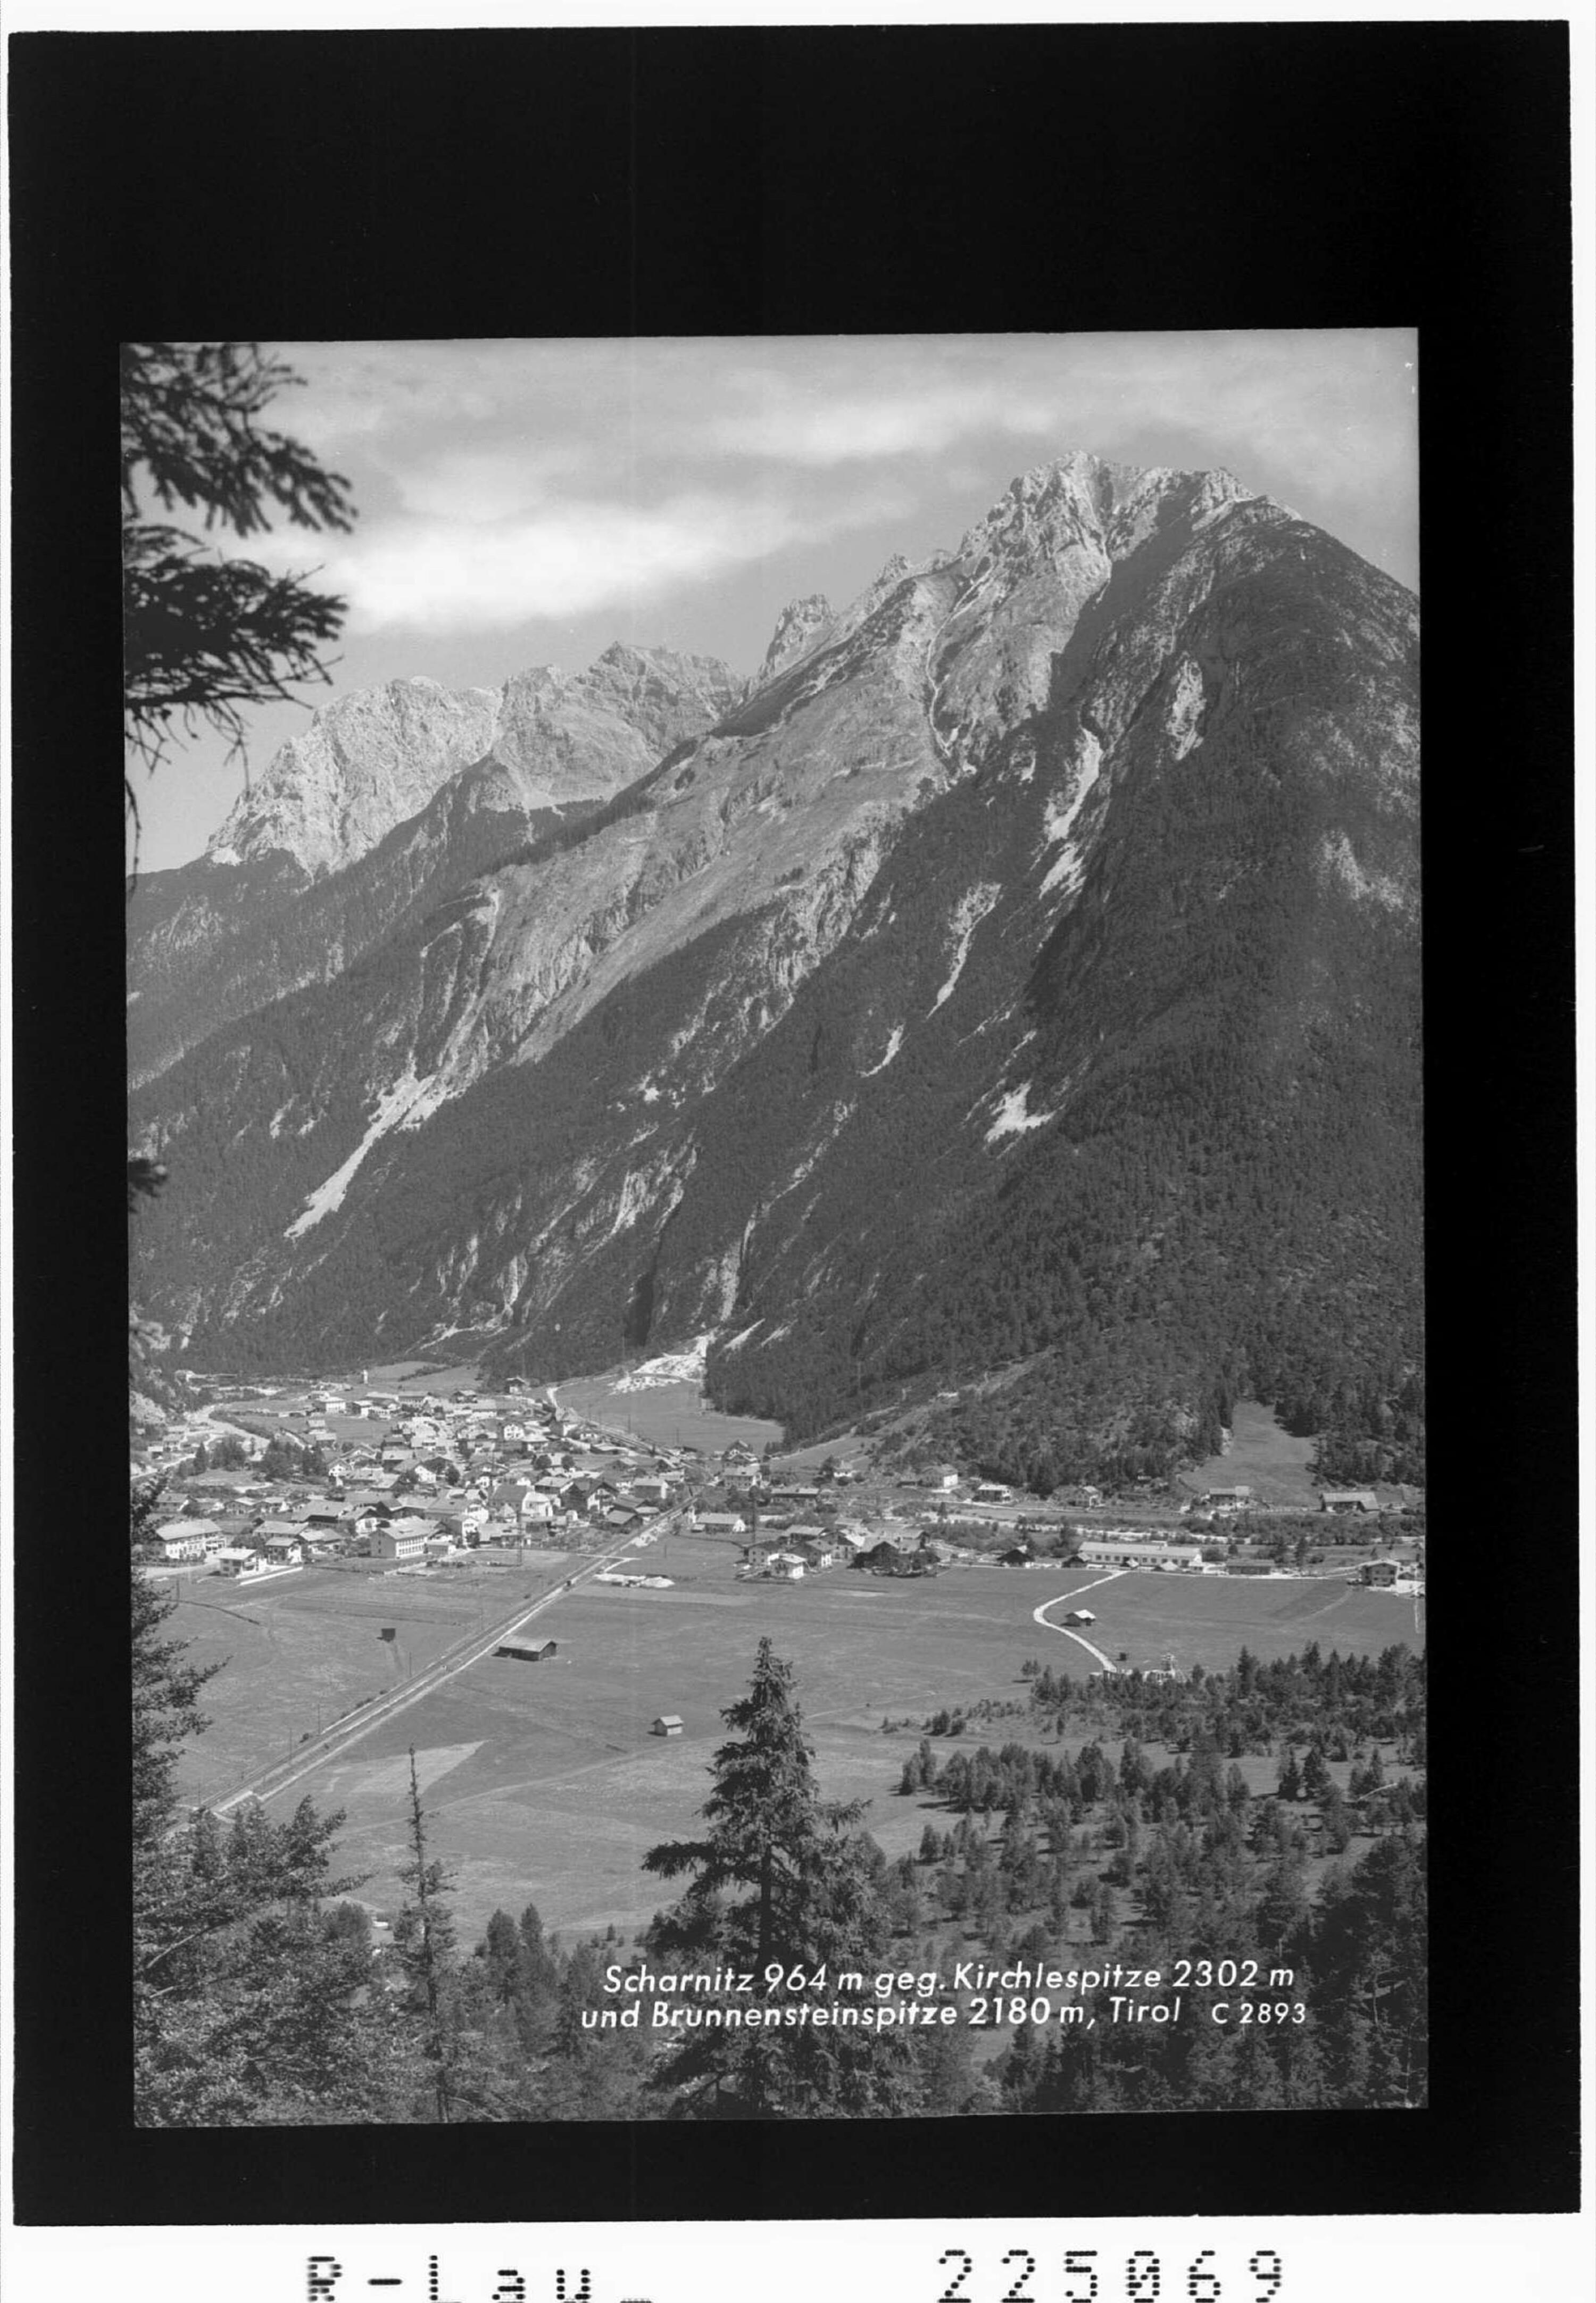 Scharnitz 964 m gegen Kirchlespitze 2302 m und Brunnensteinspitze 2180 m / Tirol></div>


    <hr>
    <div class=